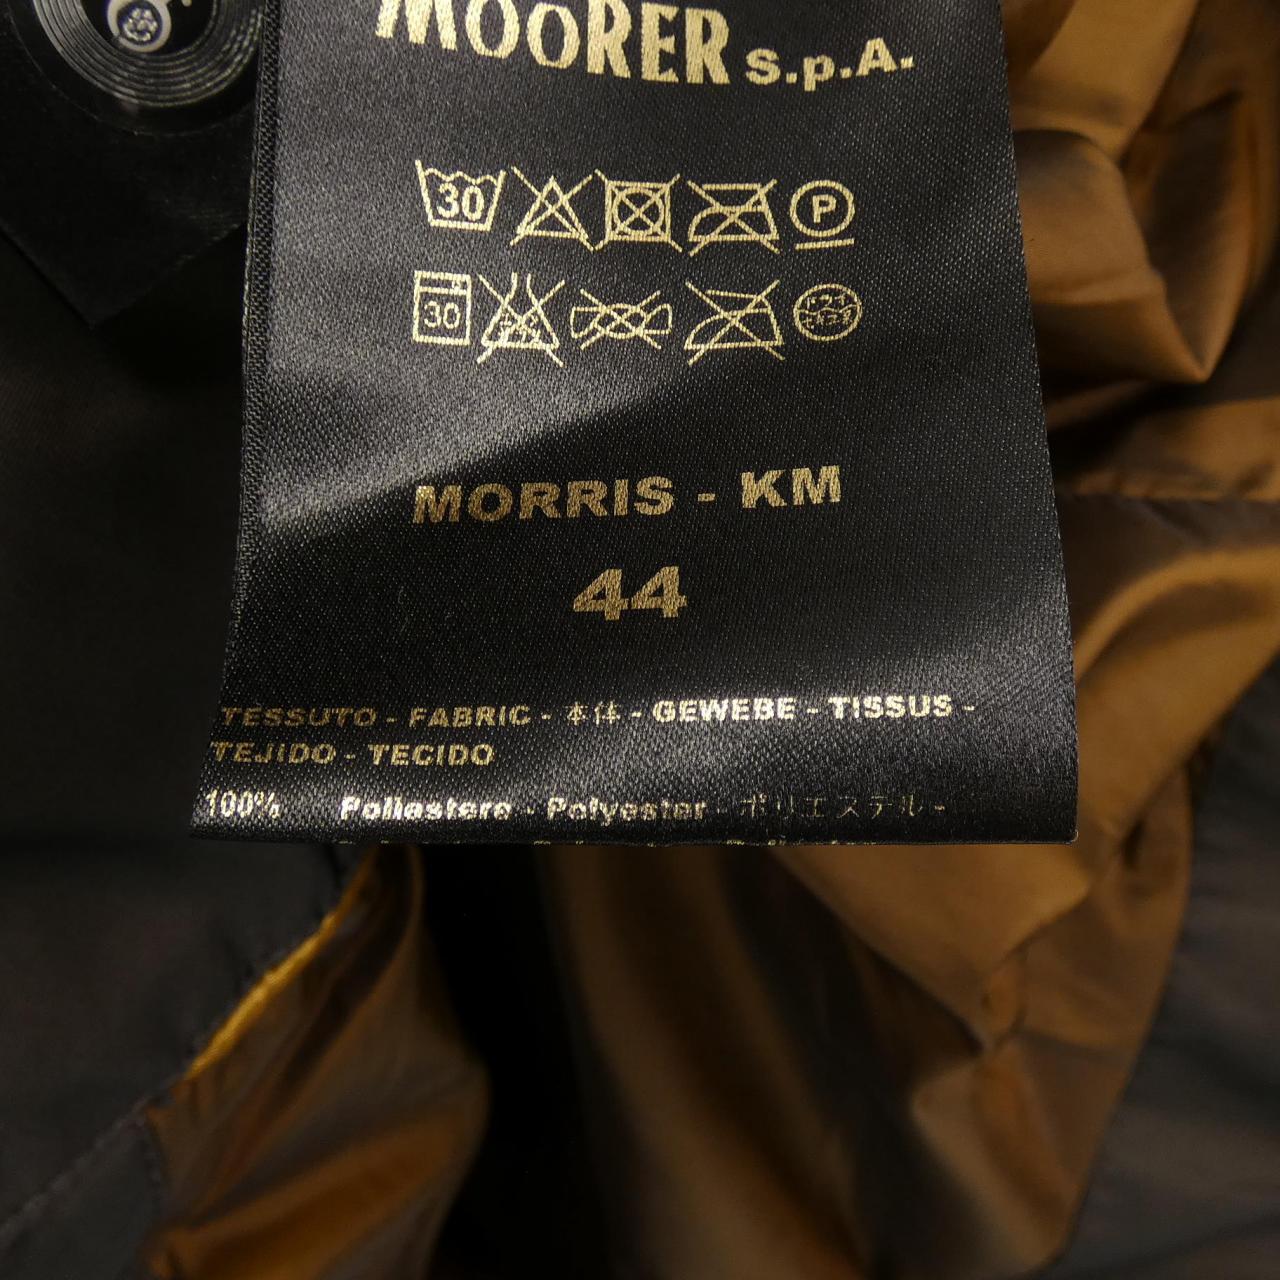 Mouret MOORER down coat